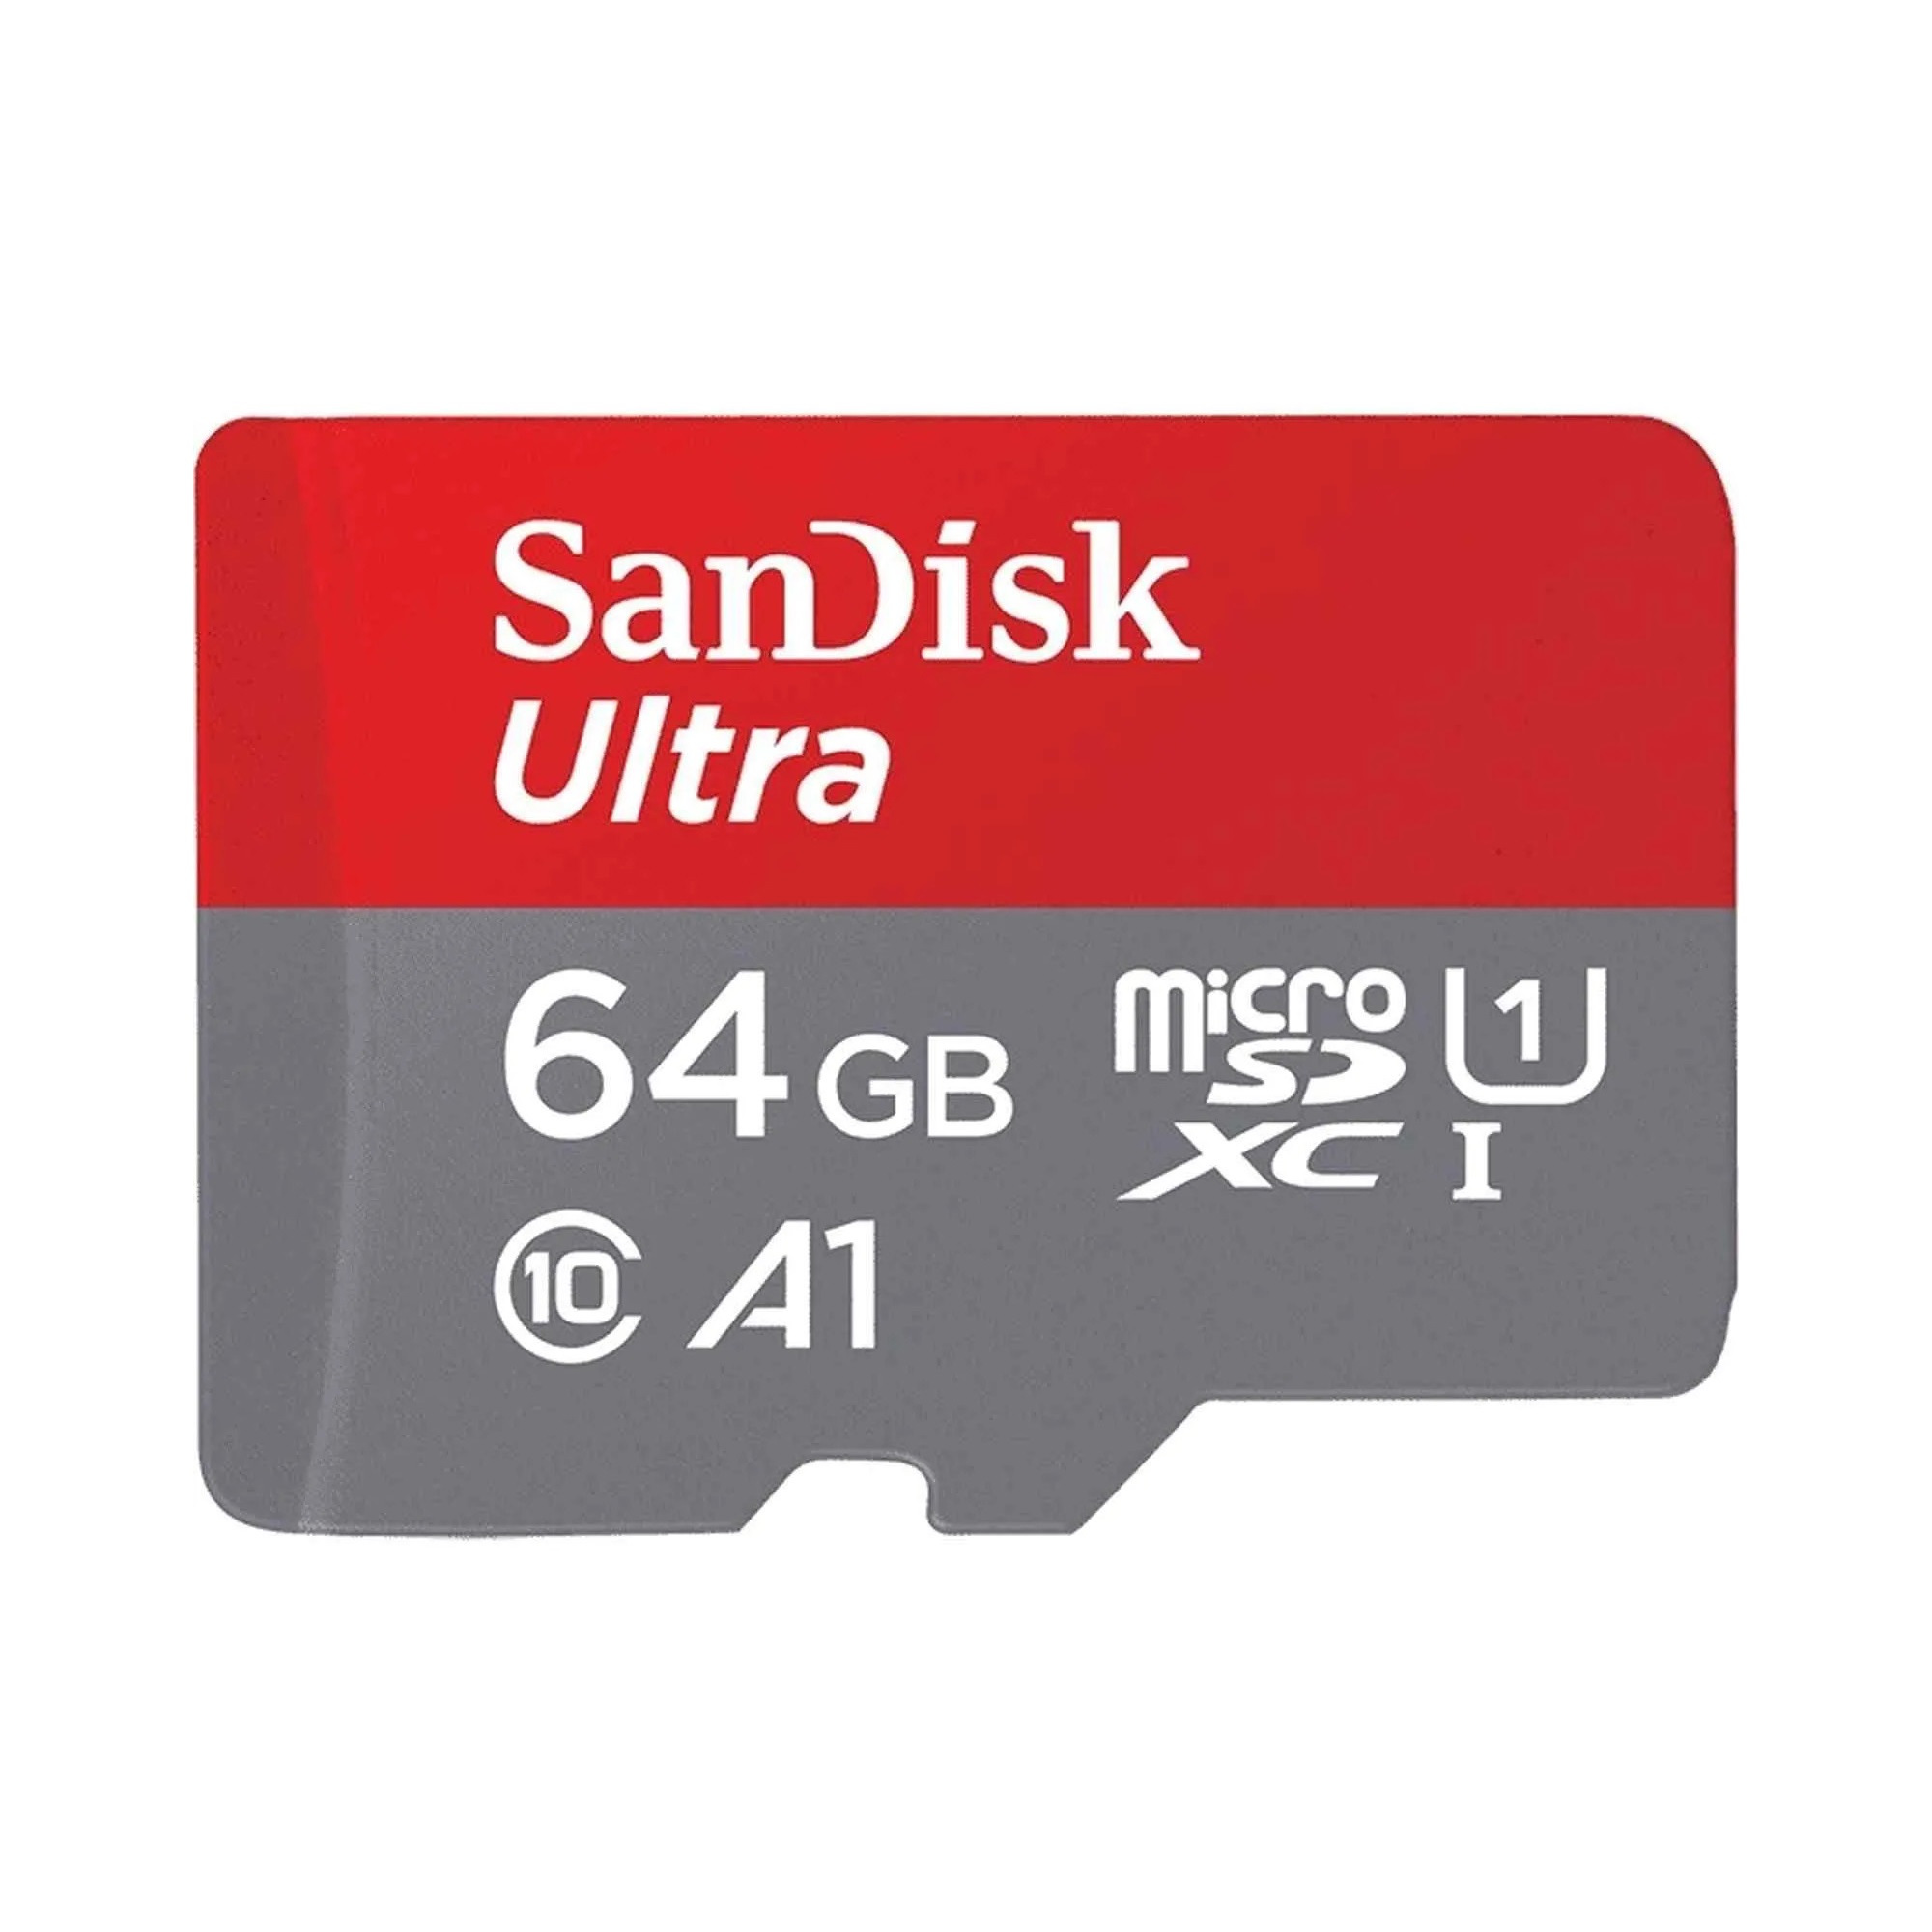  کارت حافظه microSDXC سن دیسک مدل Ultra کلاس ۱۰ استاندارد UHS-I سرعت ۱۰۰MBps ظرفیت ۶۴ گیگابایت به همراه آداپتور SD